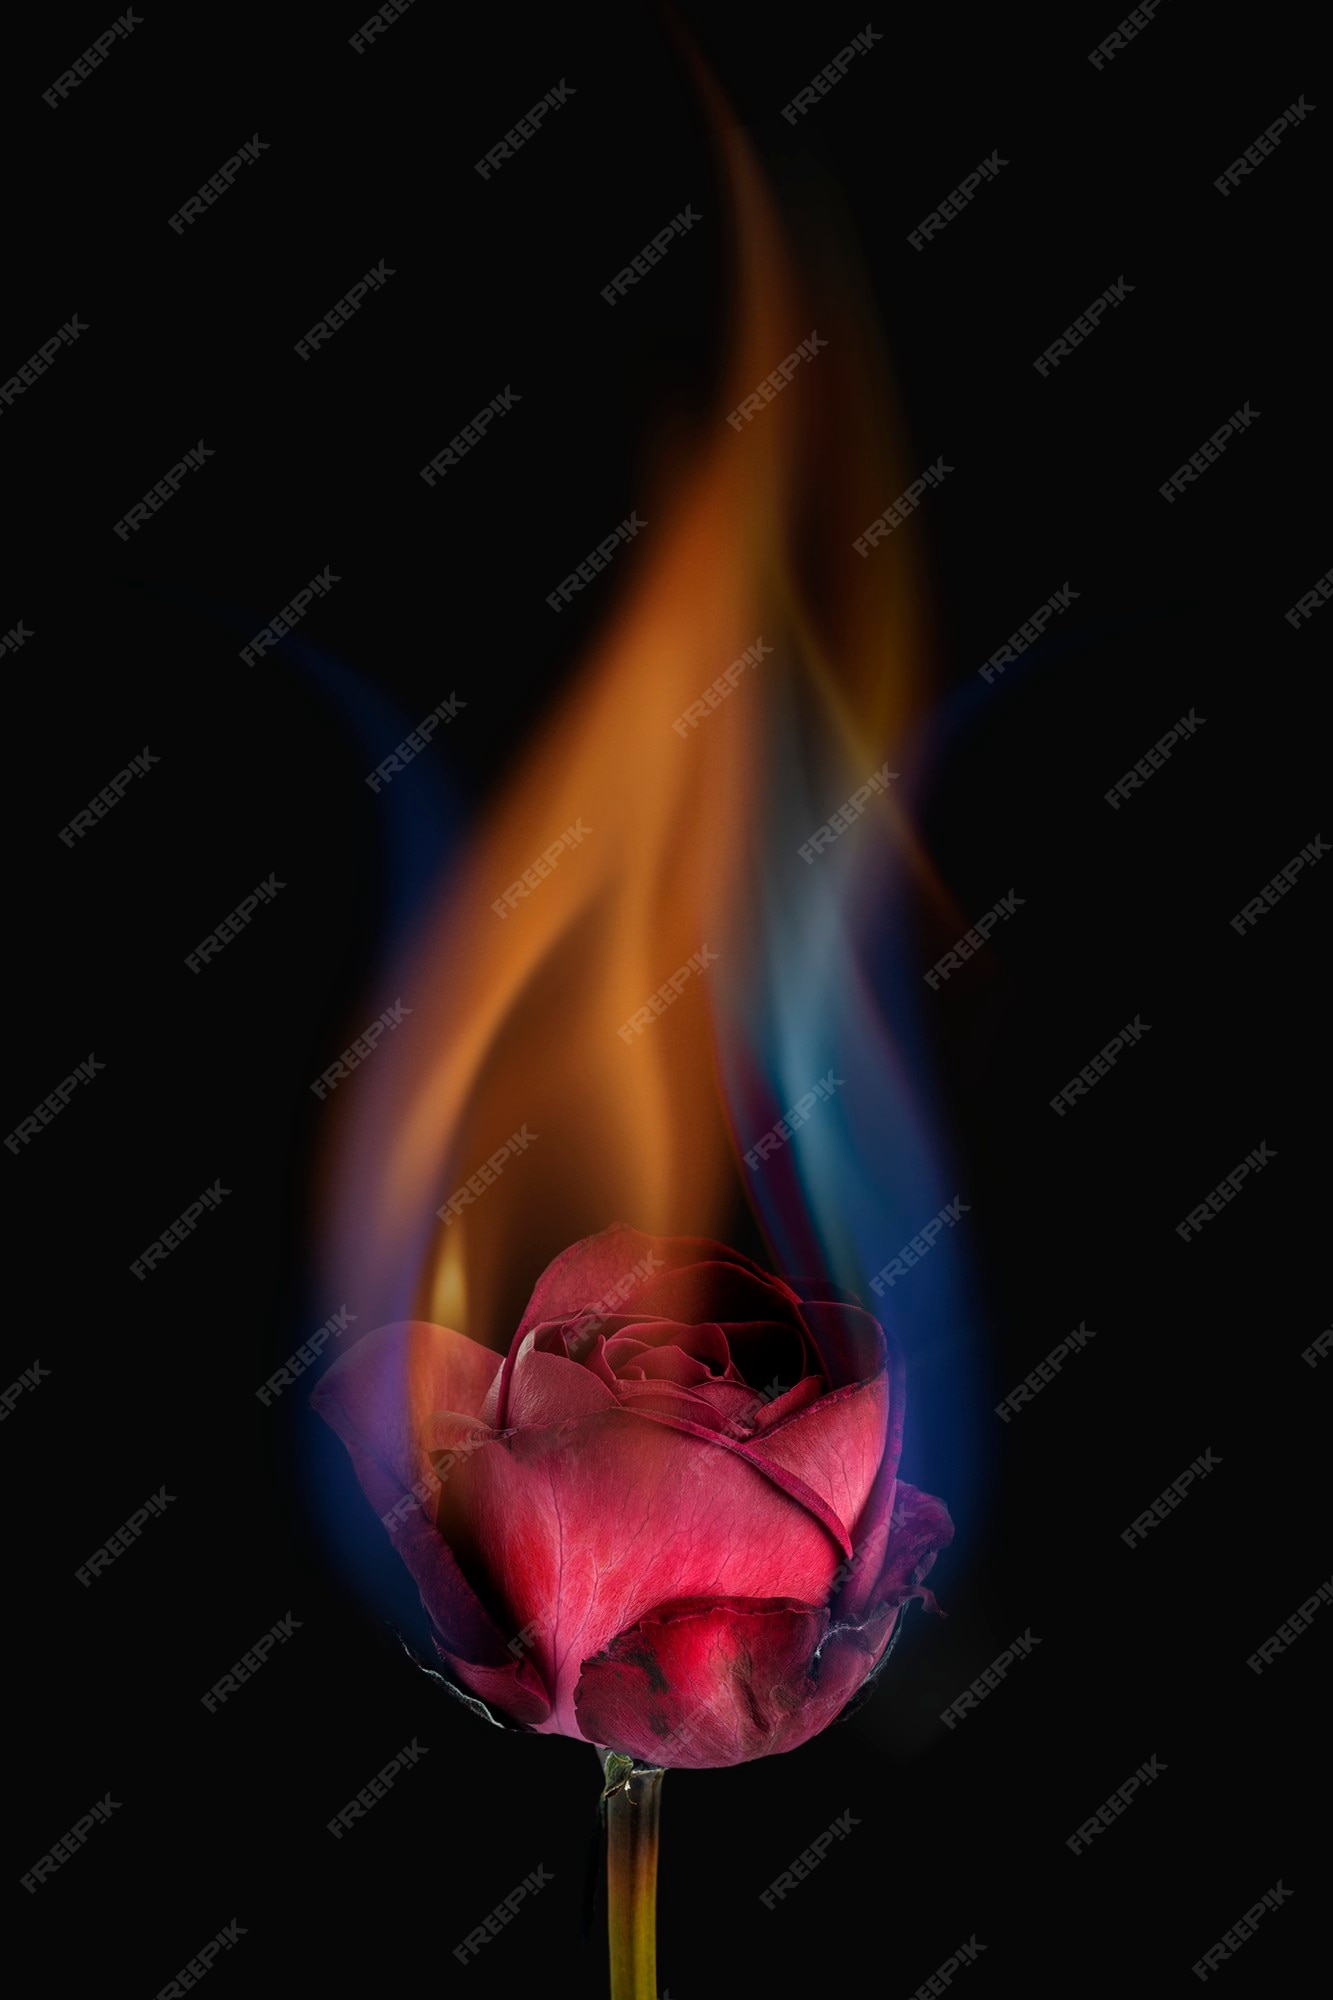 Hoa hồng đang cháy là một hình ảnh đầy cảm xúc và đậm chất nghệ thuật. Hãy để tâm hồn bạn giải phóng với tác phẩm nghệ thuật thú vị này và tìm hiểu thêm về sự đẹp đẽ của cháy bùng.